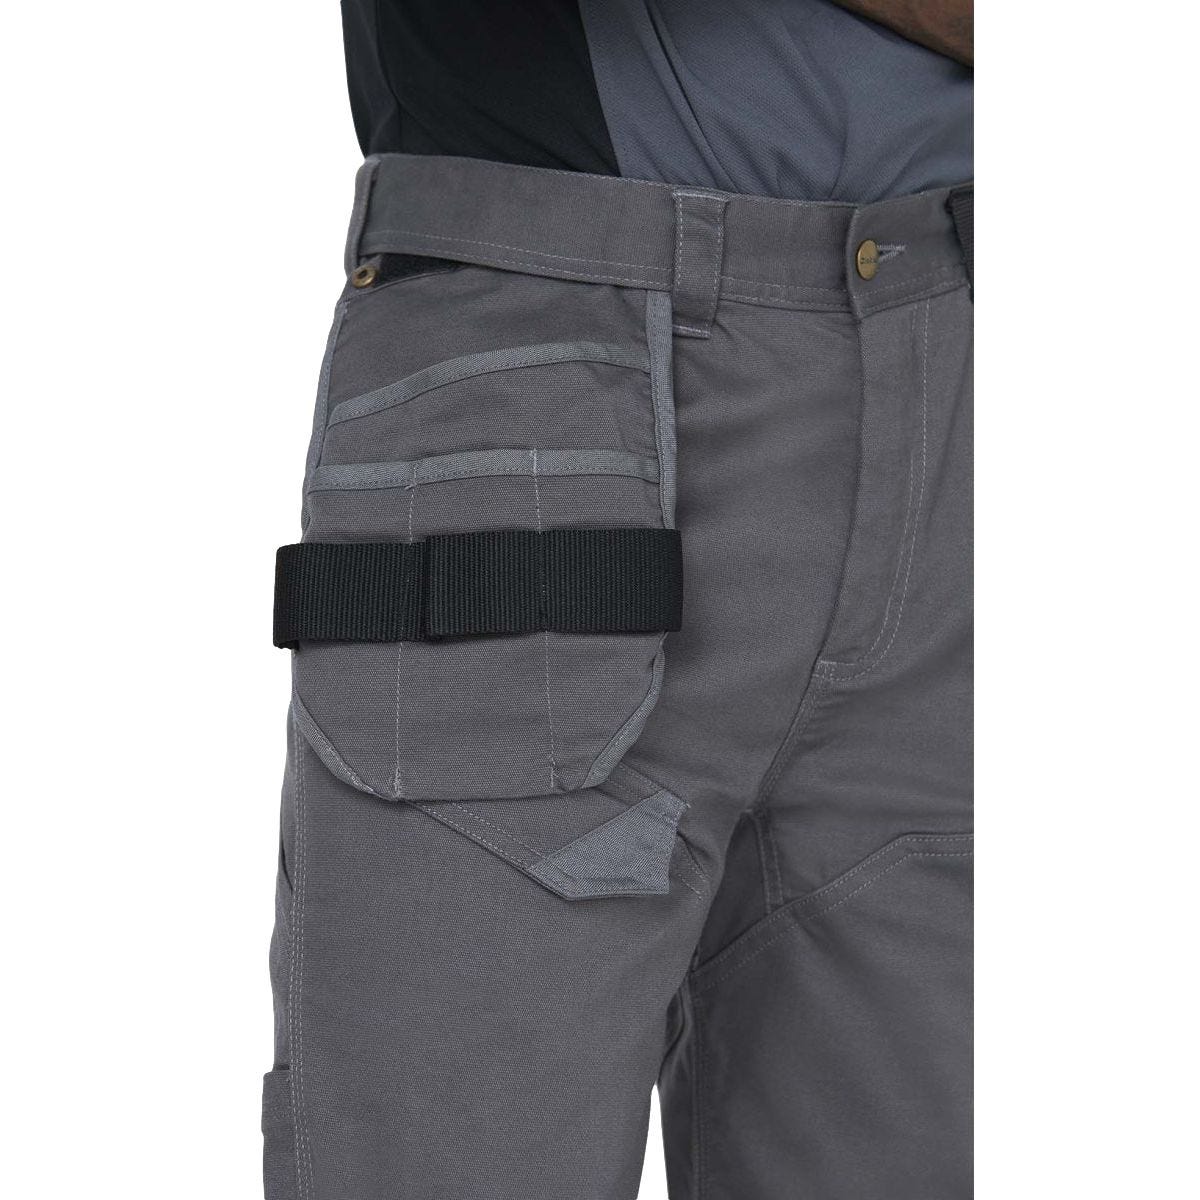 Pantalon Universal Flex Gris et noir - Dickies - Taille 50 3